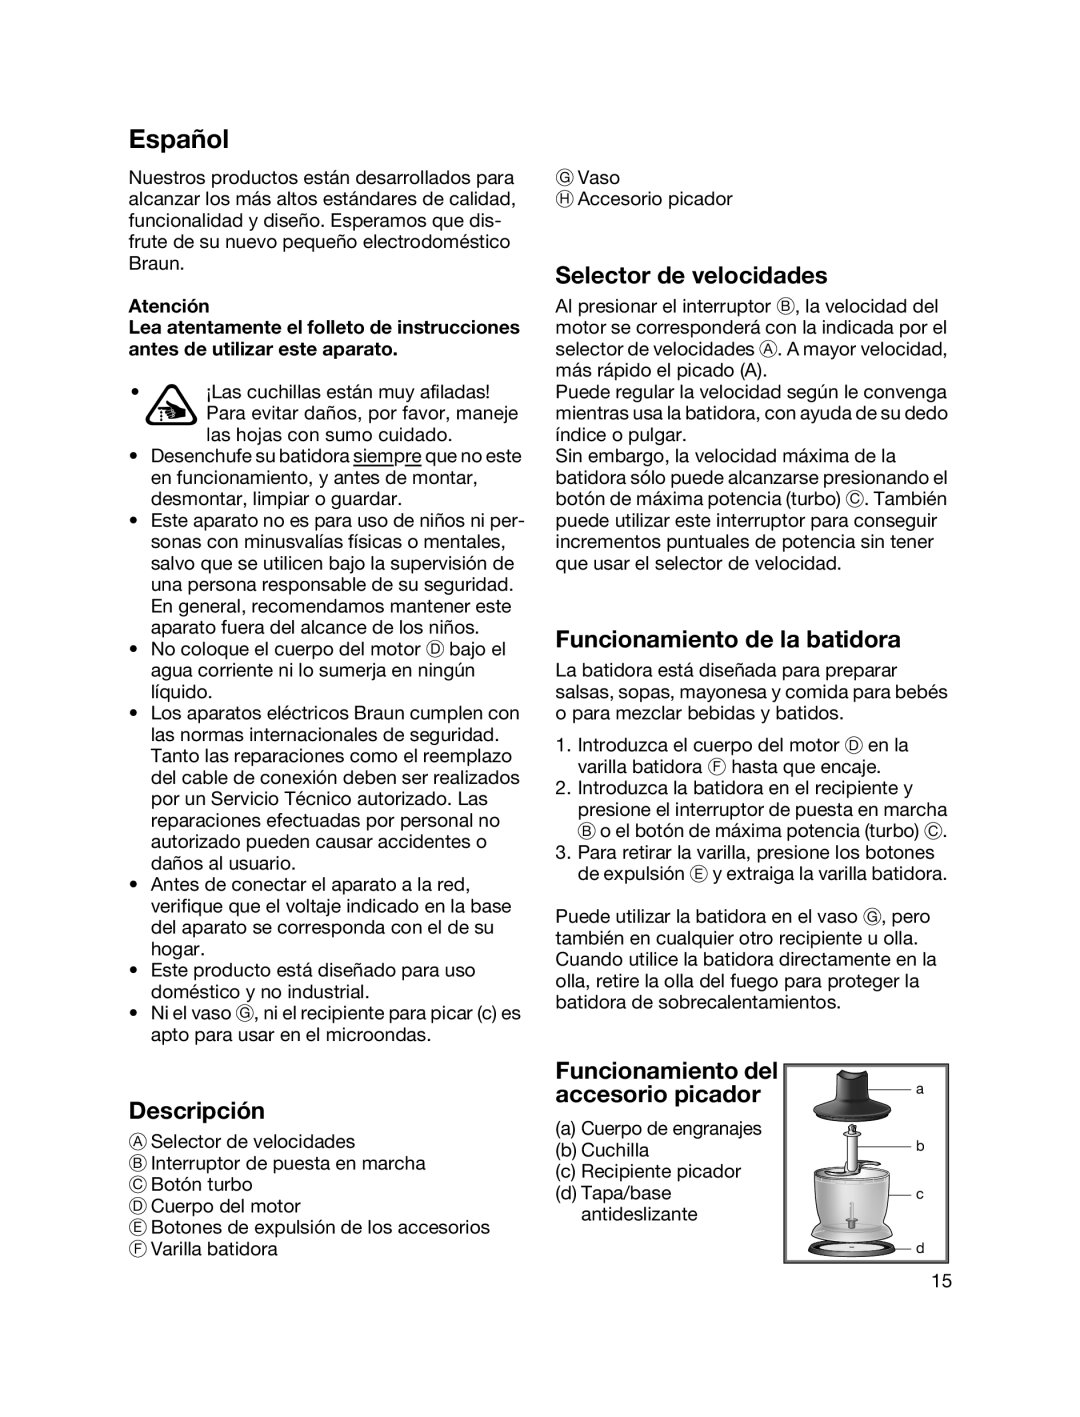 Braun MR700 manual Español, Selector de velocidades, Funcionamiento de la batidora, Descripción 